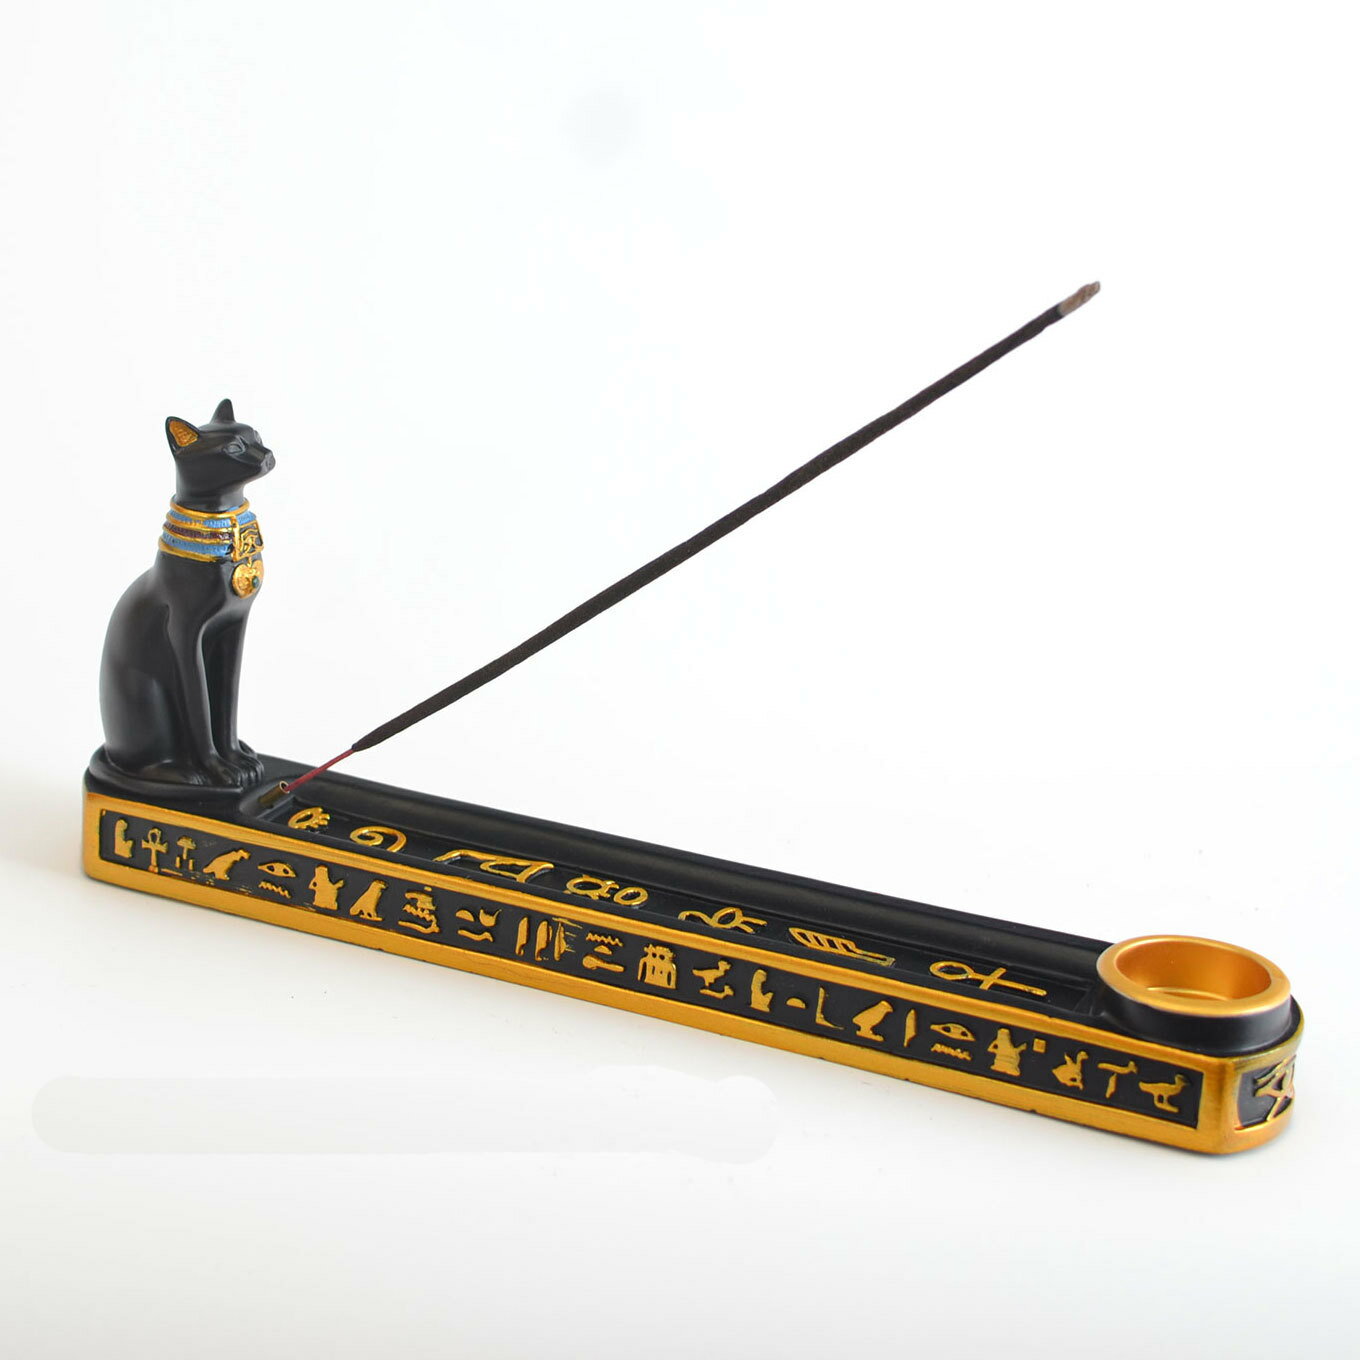 サイズ：約24×4×9.5cm　 材質：樹脂製　 重量：0.4g ※モニターの環境により、色の見え方に若干差が生じる場合があります。 古代エジプトの王族が着飾ったアクセサリーを身に着けた黒猫が何ともかわいい、アールデコ調のオリエンタルな雰囲気が漂う線香立てです。猫の足元にスティックタイプの線香を刺す穴と、コーンタイプのお香を置く皿があるのでどちらのお香も楽しめます。 古代エジプトでは黒猫は聖なる生き物で女神のバステト神の化身とされていました。猫は穀物を荒らすネズミをとらえ、母性が強いので豊穣や家の守り神として信仰されていました。日本でも黒猫は魔除けや商売繁盛に縁起のある福猫です。 灰が落ちる灰受け部には古代エジプトの象形文字であるヒエログリフが装飾され、香炉として使わなくてもエジプシャンなおしゃれインテリアとしてエキゾチックなムードを醸します。猫好きのお友達のプレゼントとしてもきっと喜ばれることでしょう。 この黒猫のミステリアスな香立てを占い館の小道具や、リラクゼーション施設のアロマグッズとしてお使いいただければお店のムードもより一層神秘さが増し、お客様の満足度もきっと高まります。 ◇保証期間：到着日から1ヶ月以内にご連絡ください ※お客様ご都合の交換と返品は、お承っておりませんのであらかじめご了承ください。 ※ご注文の商品が「不具合がある」など当社原因による場合には、 商品到着後「1ヶ月以内」に電話もしくはメールにて ご連絡いただいた商品は交換または返品を受け付けさせていただきます。 ◇お客様都合によるキャンセル（商品発送前） ご注文から30分以内は、理由の有無を問わず購入履歴からキャンセルすることが可能です。 なお、当店では、ご注文から30分以上過ぎた場合、お客様都合によるキャンセルは承っておりません。 あらかじめご了承ください。 ◇ 配送方法について ◇ ※ 発送後のキャンセル・送付先の変更はできません。 ※ 届かない場合や、転居による紛失に関しての補償は一切ありません。 ご注文前に、送付先に誤りがないか、部屋番号抜け等がないかを必ずご確認ください。 ※ 長期不在・表札がない・表札や郵便受けに書かれたお名前がご注文者のお名前と異なる場合、 お届けができず自動的に返送となる場合がございます。 返送された場合、返送・再配達にかかる送料はお客様負担となります。ご了承ください。 ◇ 注意事項 ◇ ※ ご利用のモニターによって、実物とすこし異なる色に表示される場合がございます。 ※ 全商品、北海道・沖縄・離島は別途 送料が掛かります。 ※ ラッピング対応しておりませんので、ご了承ください。 ※ 説明書は日本語化されていません。 ※輸入品の為予告なくパッケージや仕様が多少変更される場合があります。 ご了承ください。 ※本商品は新品未使用品ですが、輸入品のため、汚れや傷・ムラがある場合がございます。ご了承ください。